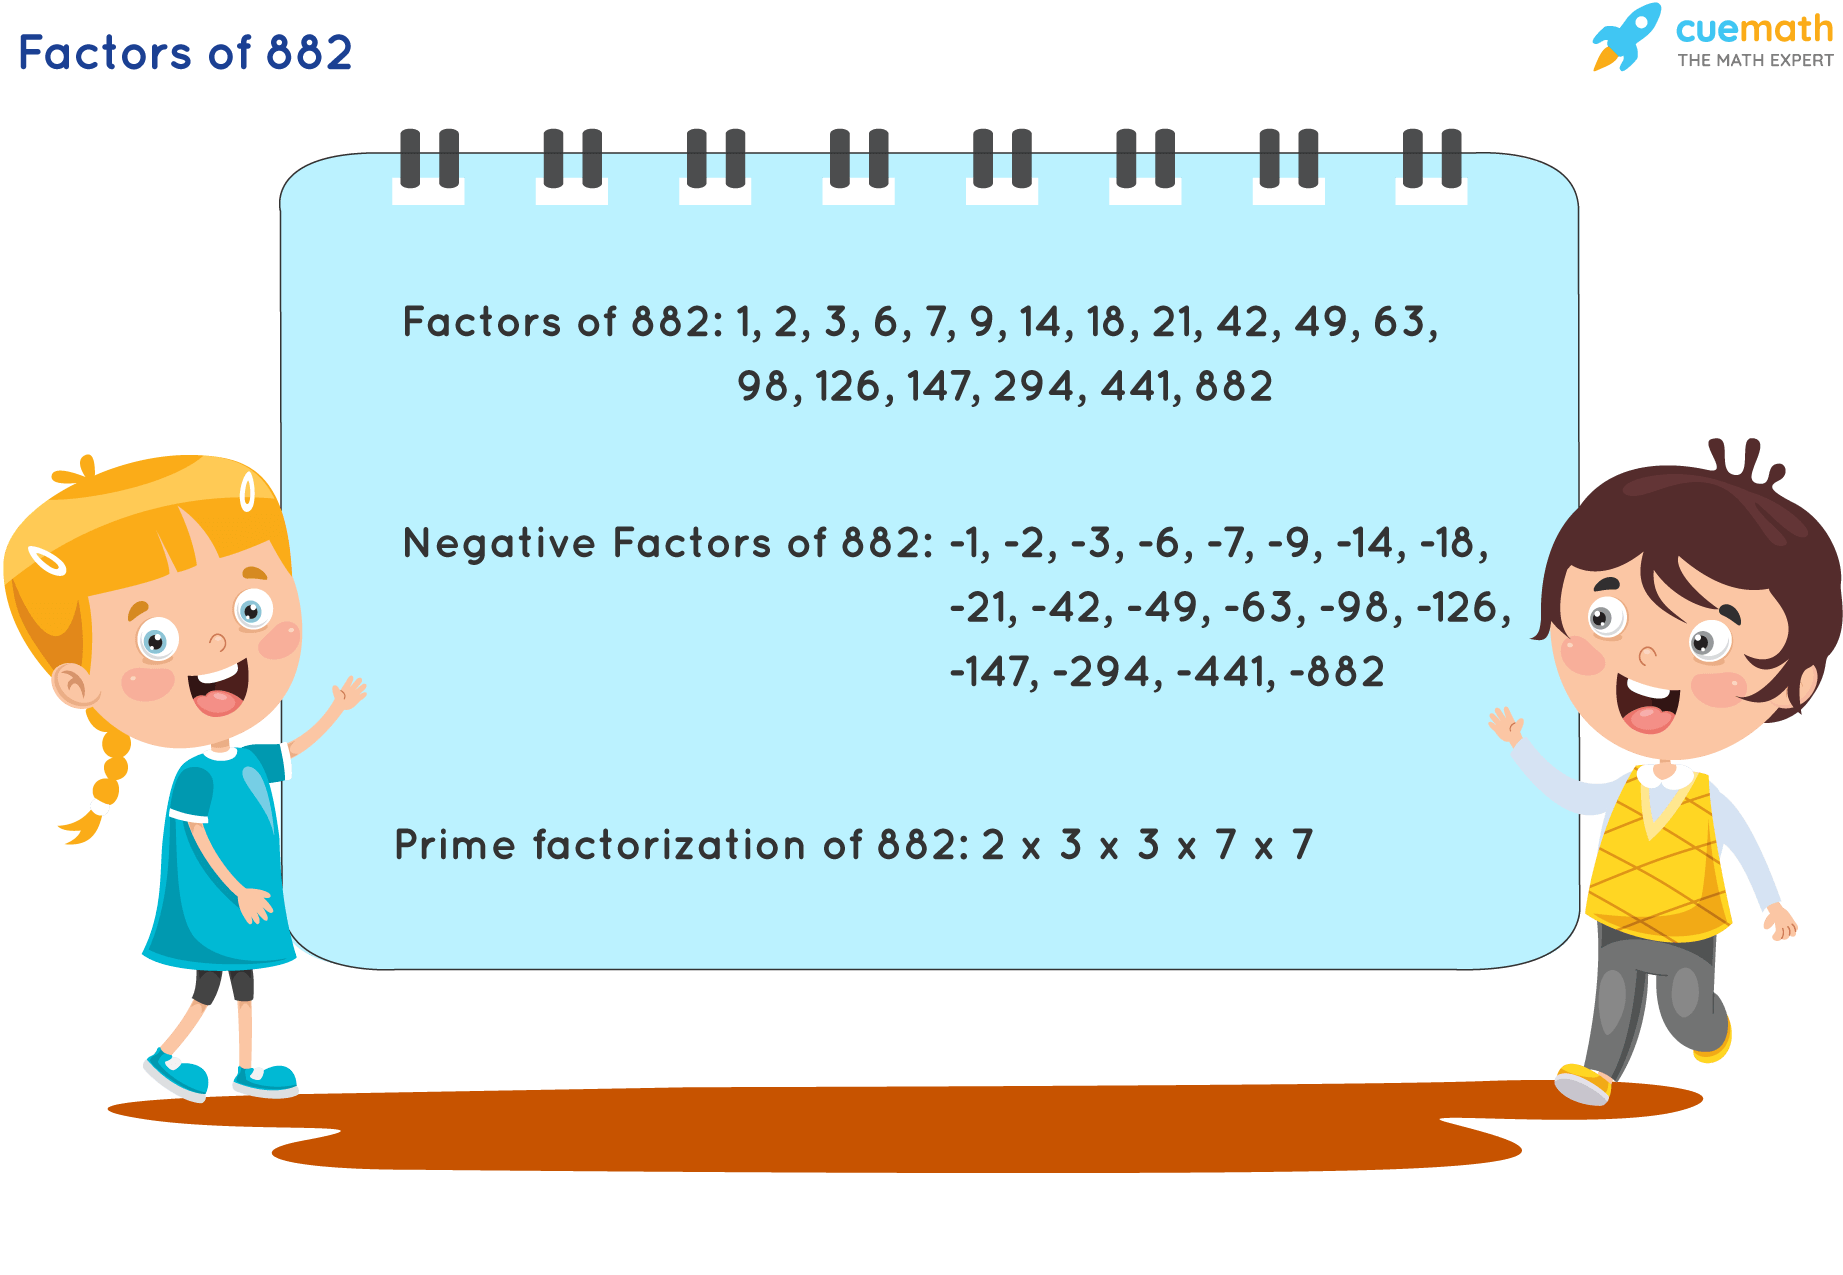 Factors of 882